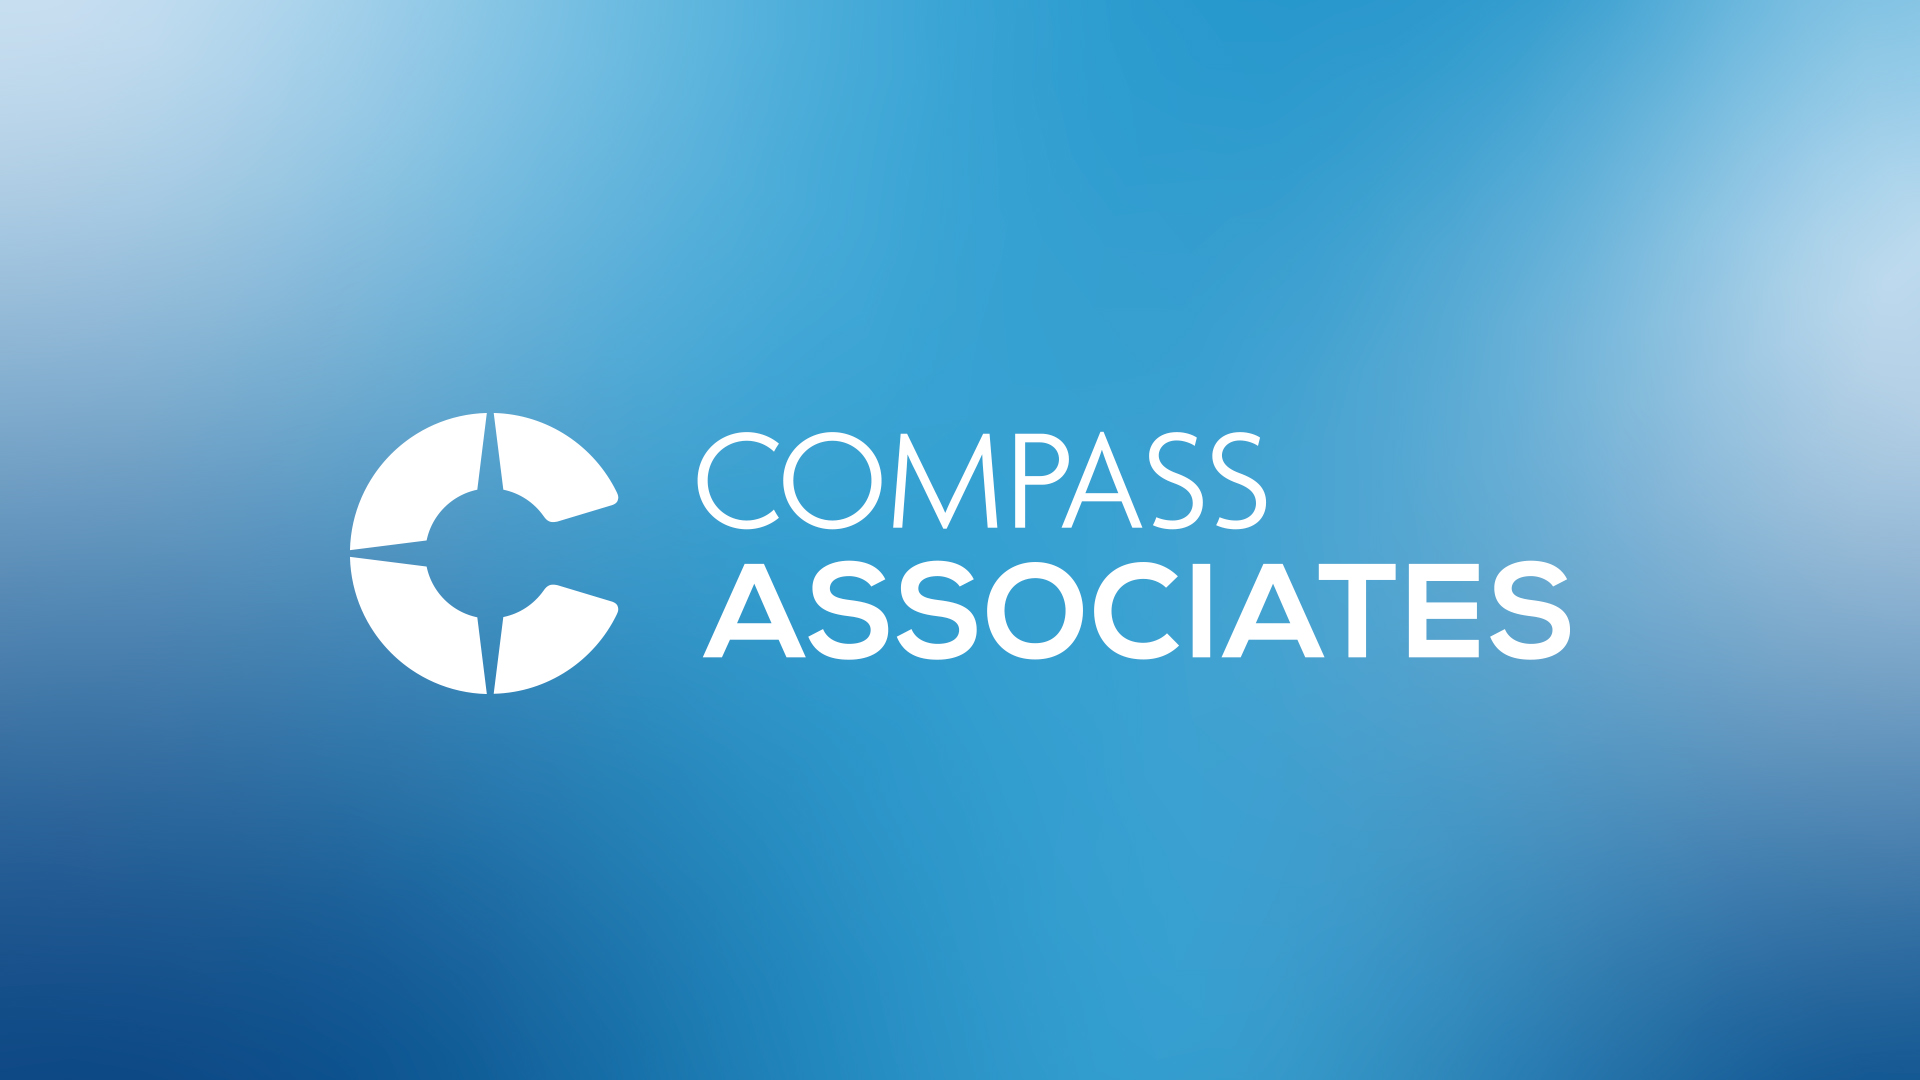 Compass Associates Website